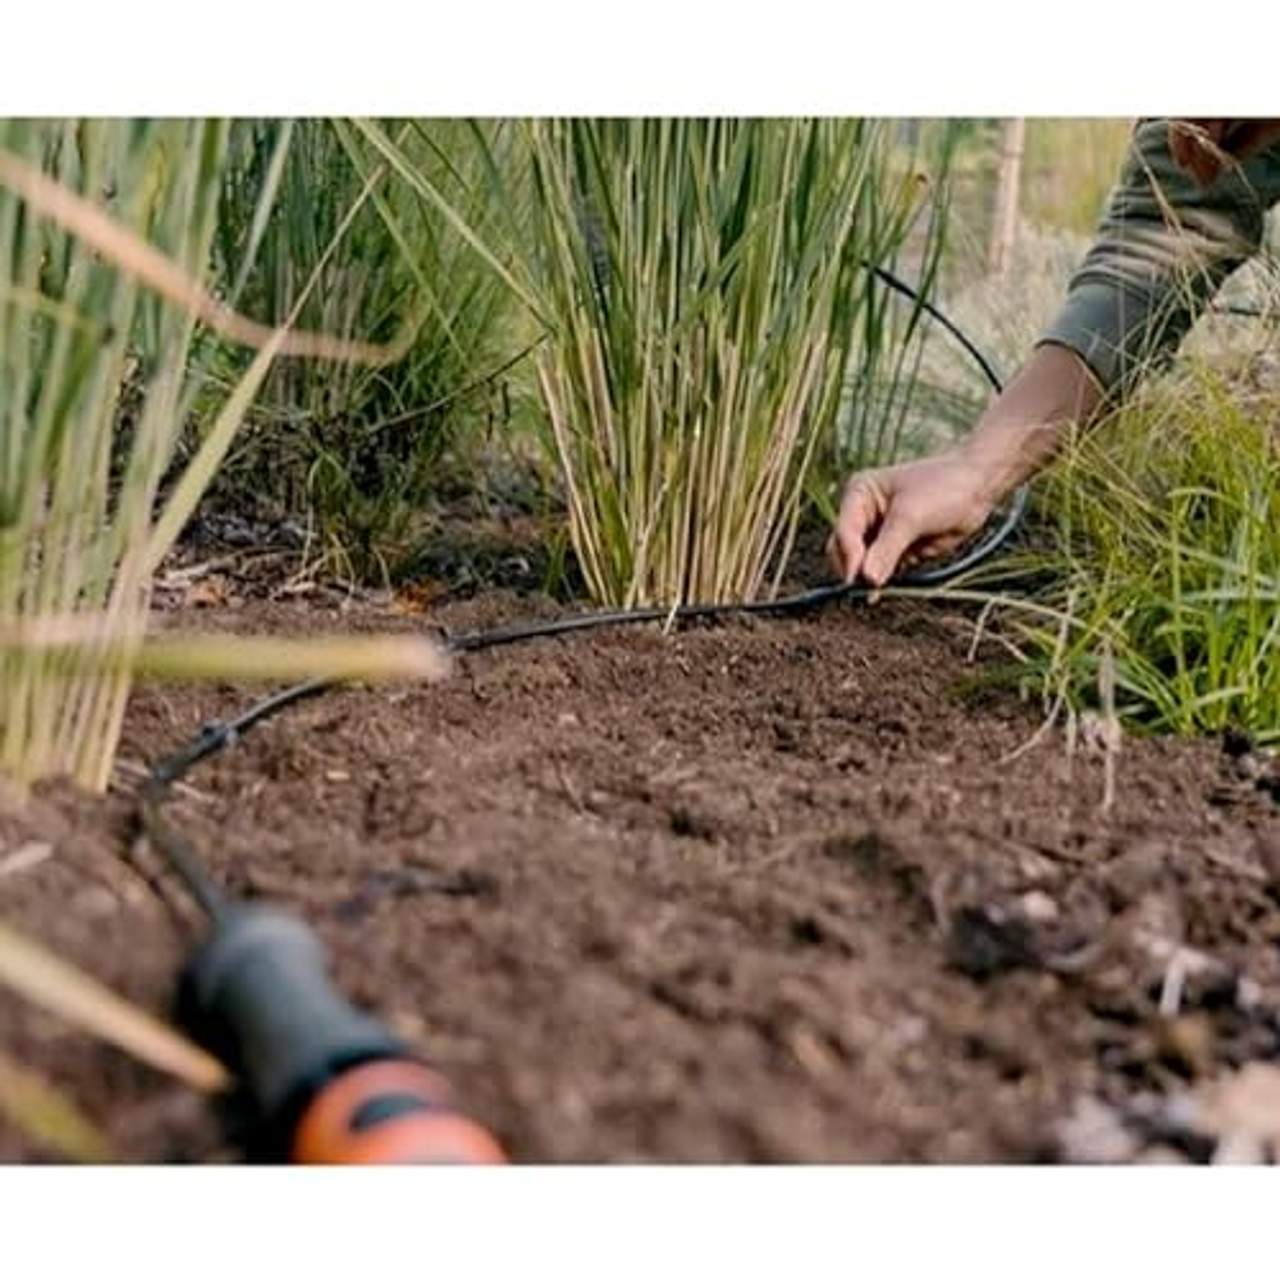 Gardena Start Set Pflanzreihen L: Micro-Drip-Gartenbewässerungssystem